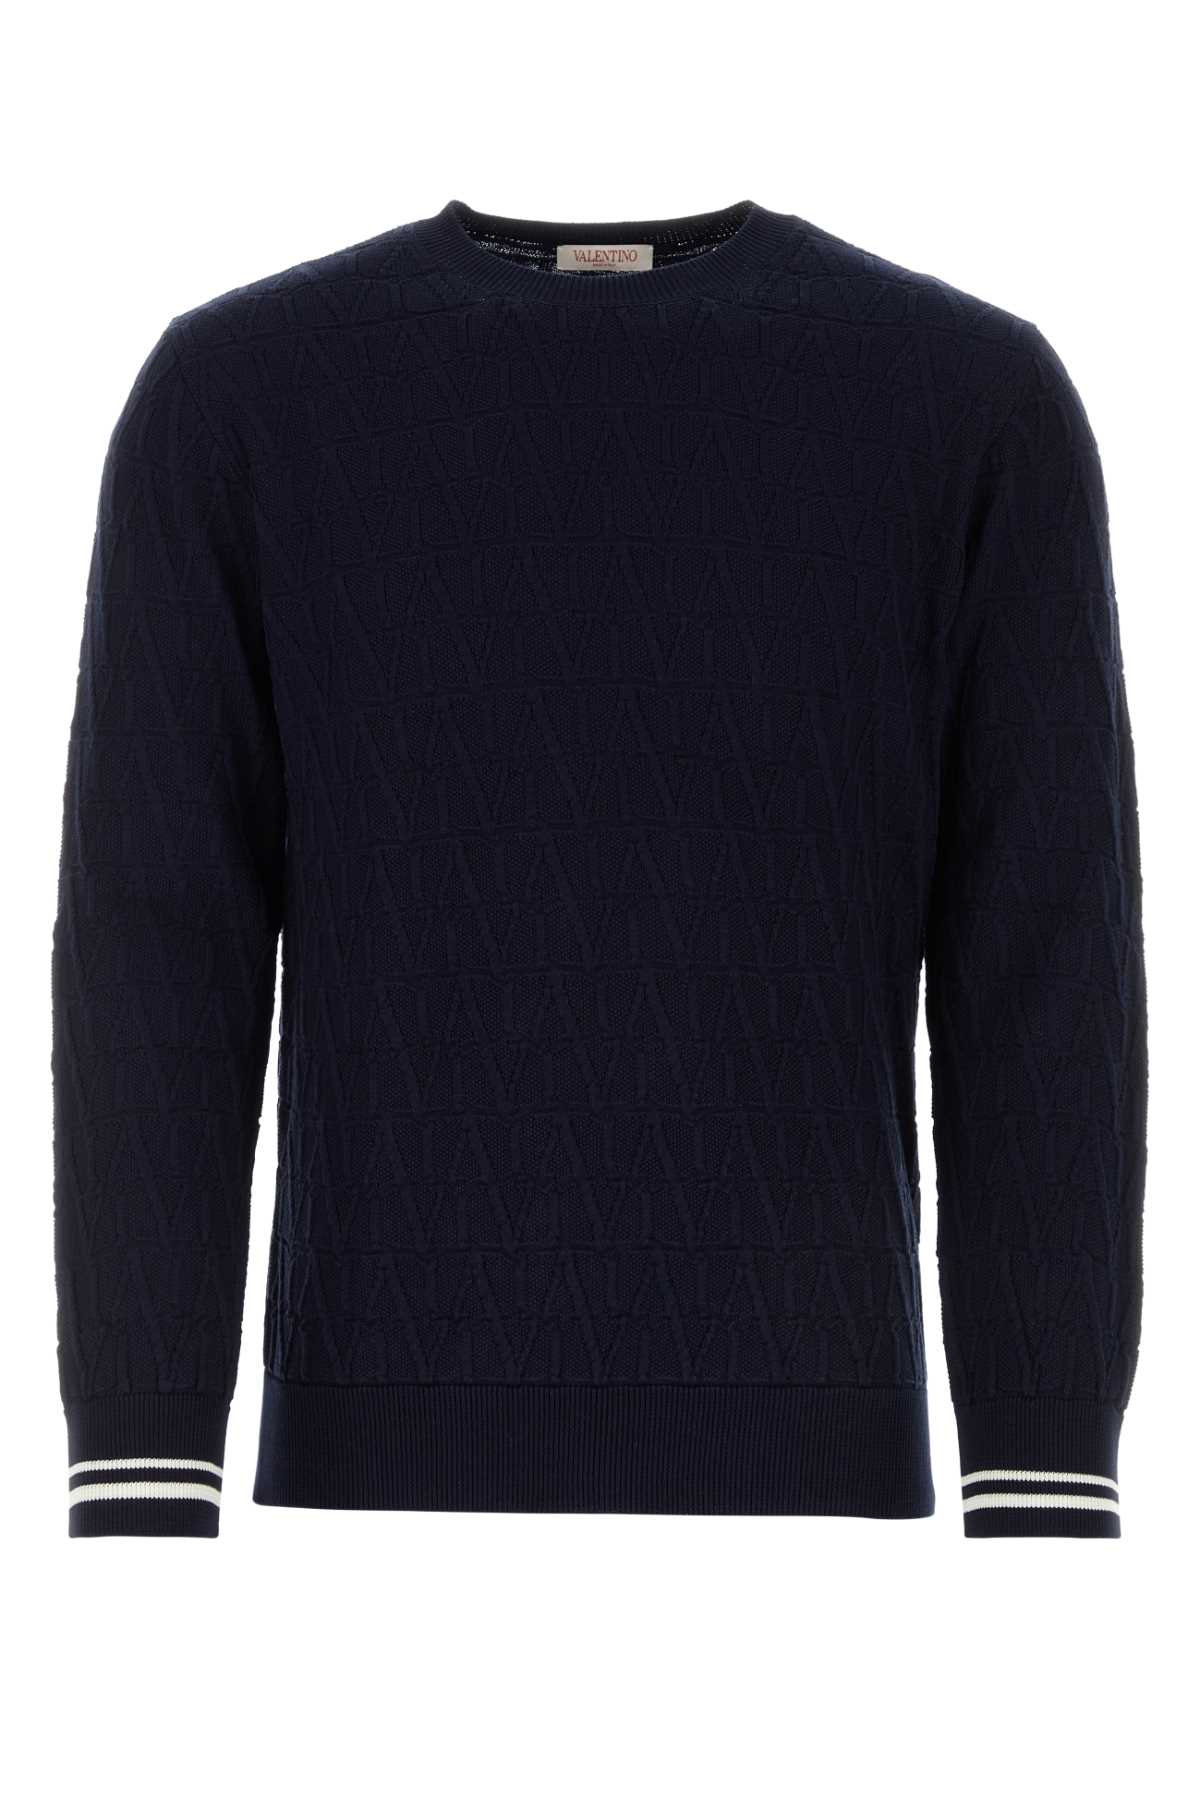 Valentino Dark Blue Cotton Sweater In Sttoileiconographnavynavyavorio